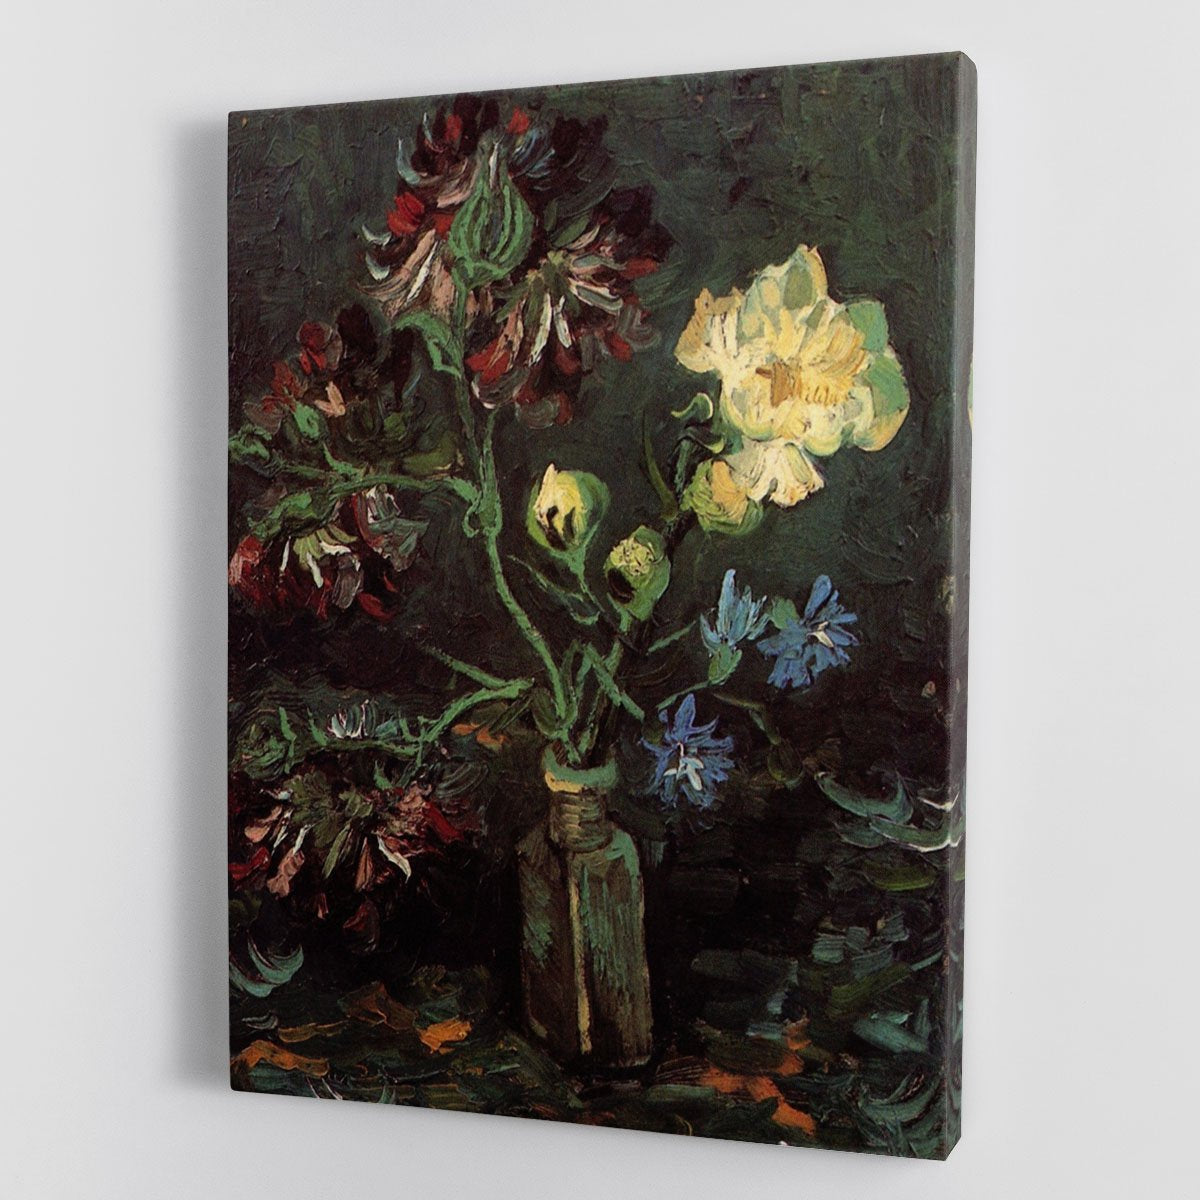 Vase with Myosotis and Peonies by Van Gogh Canvas Print or Poster